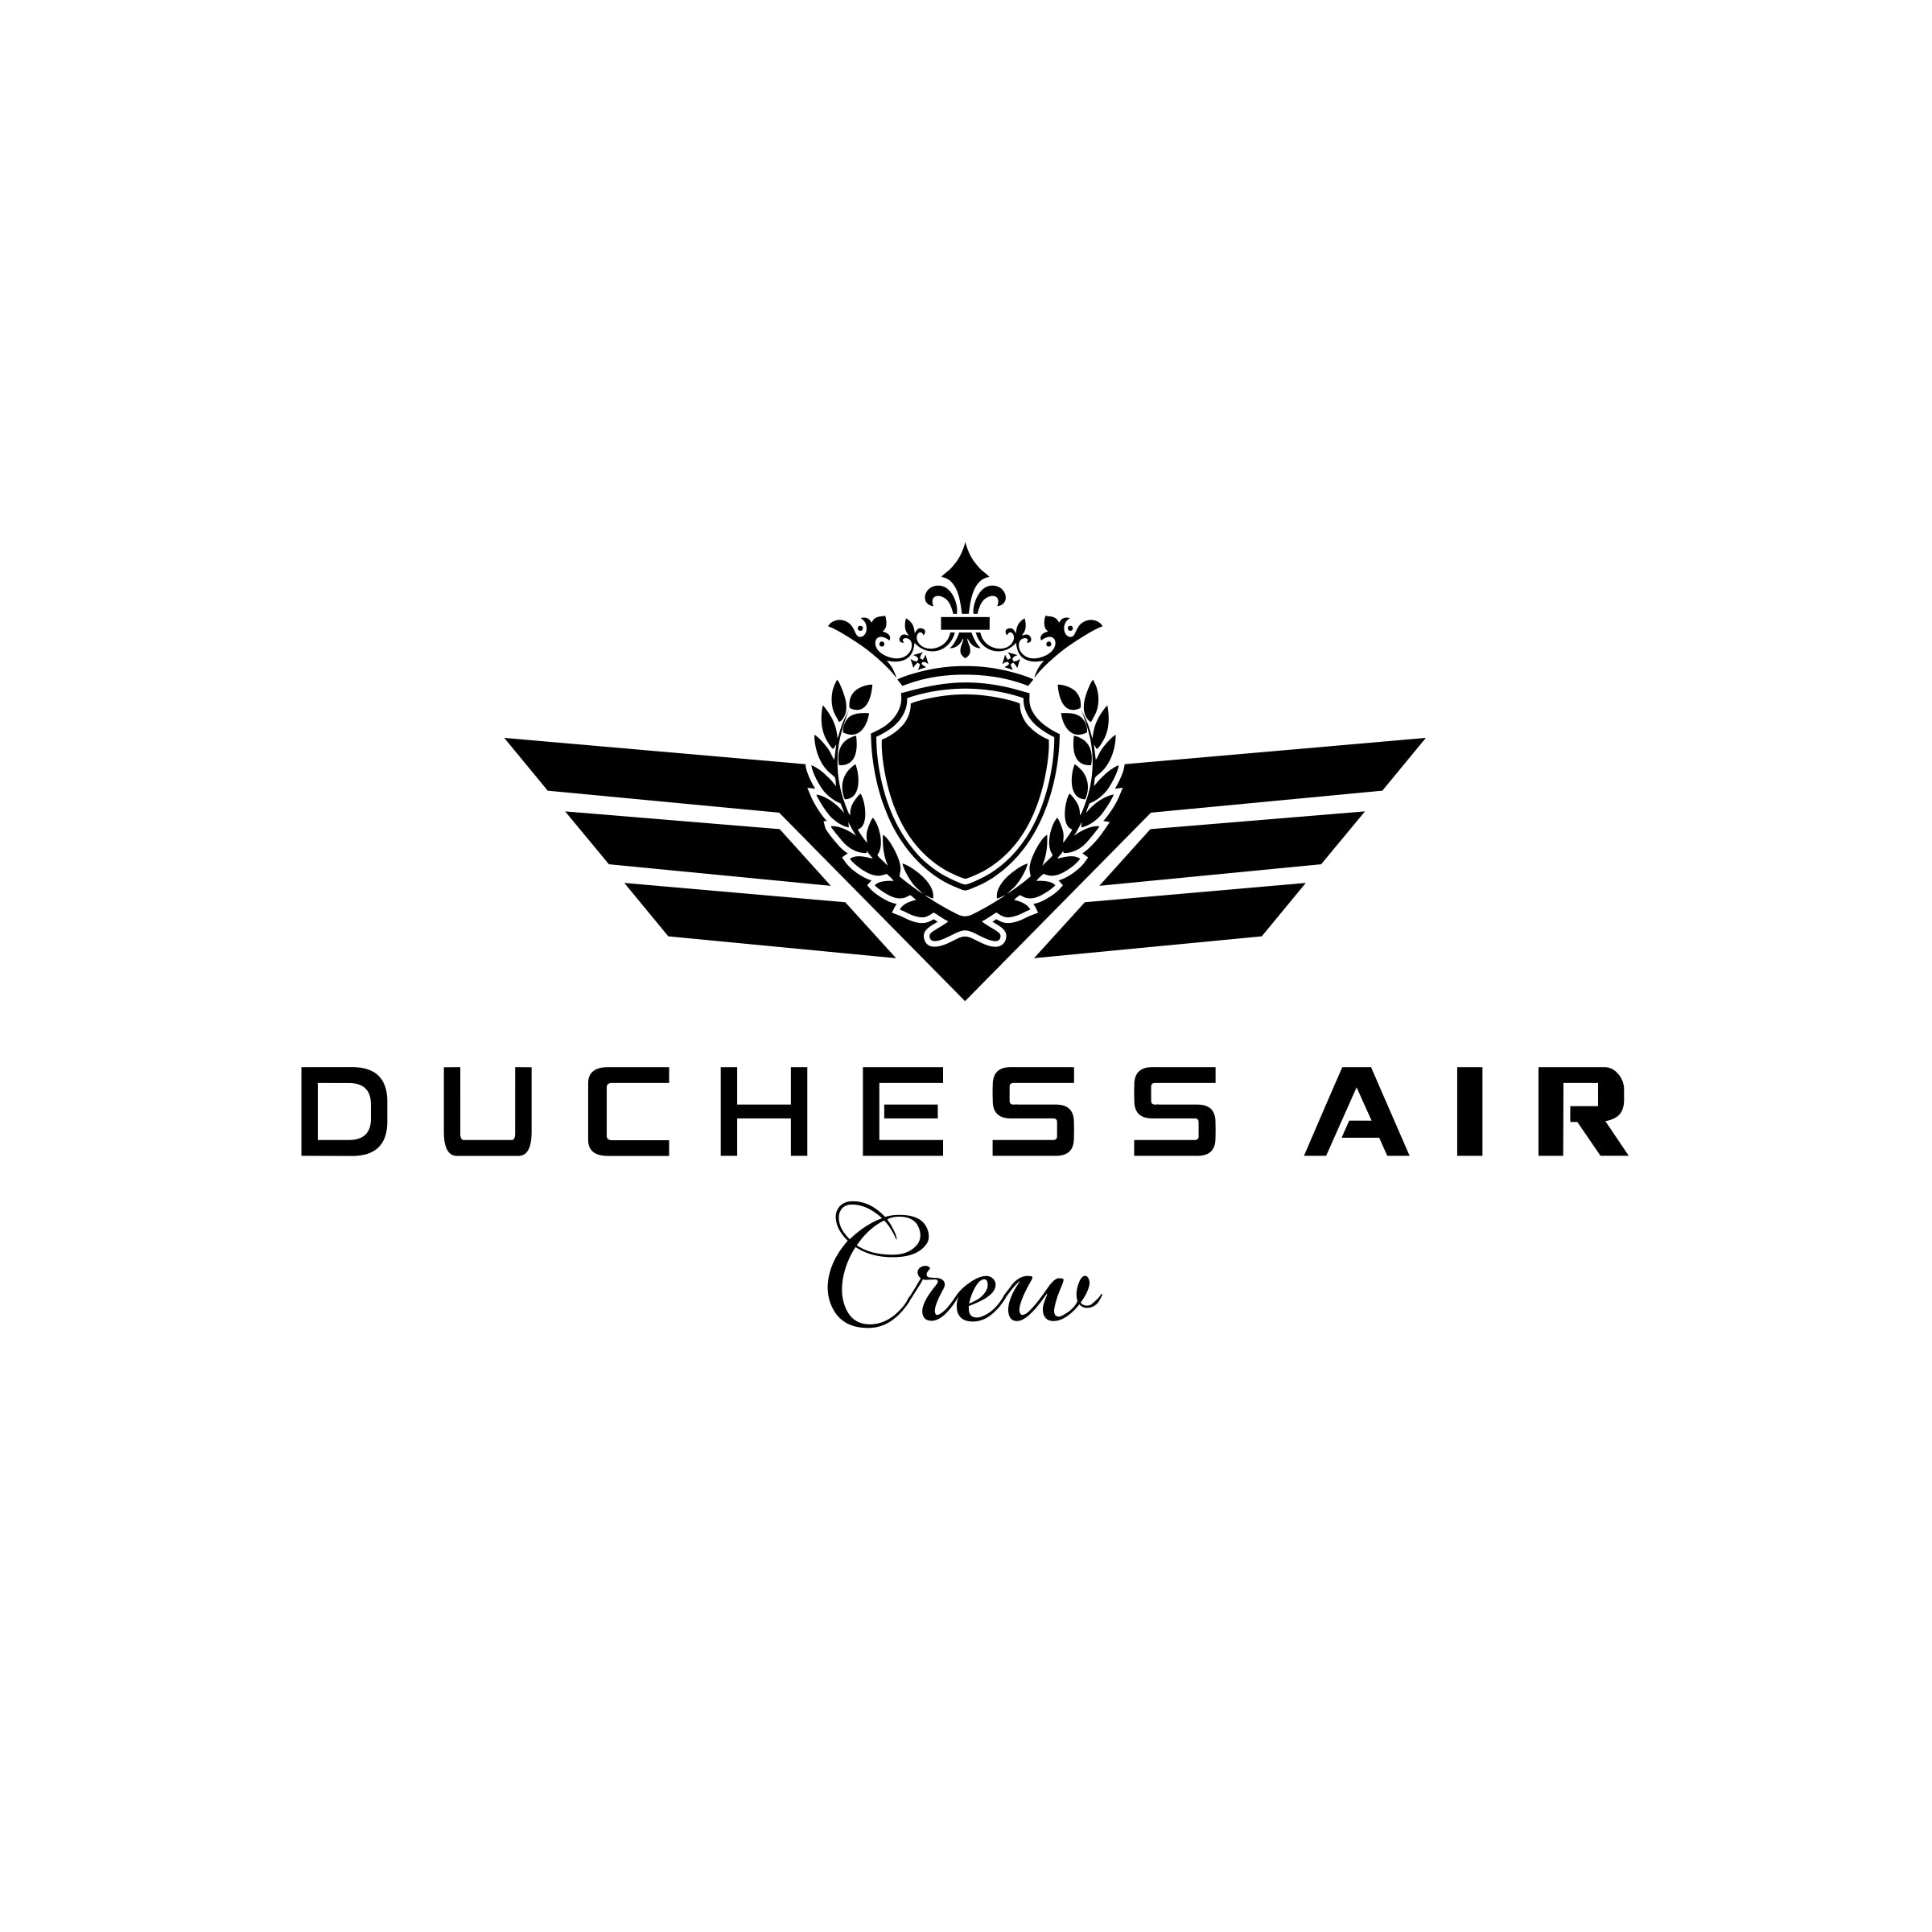 Duchess Air Crew